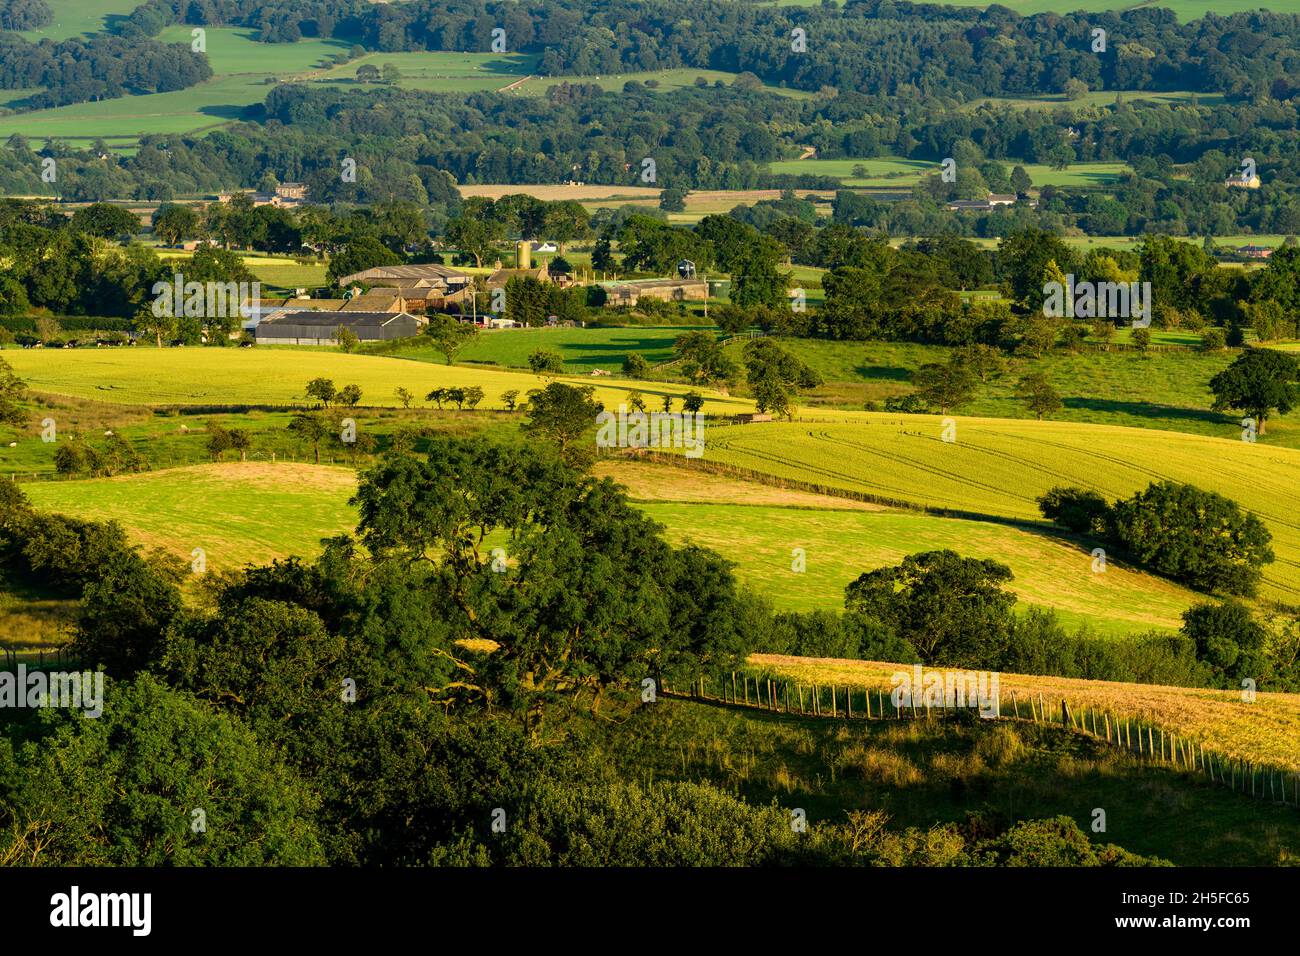 Vue pittoresque sur la campagne ensoleillée de Wharfedale (vallée verdoyante, pente de flanc de colline, bâtiments agricoles, champs de terres agricoles ensoleillés) - North Yorkshire, Angleterre Royaume-Uni. Banque D'Images